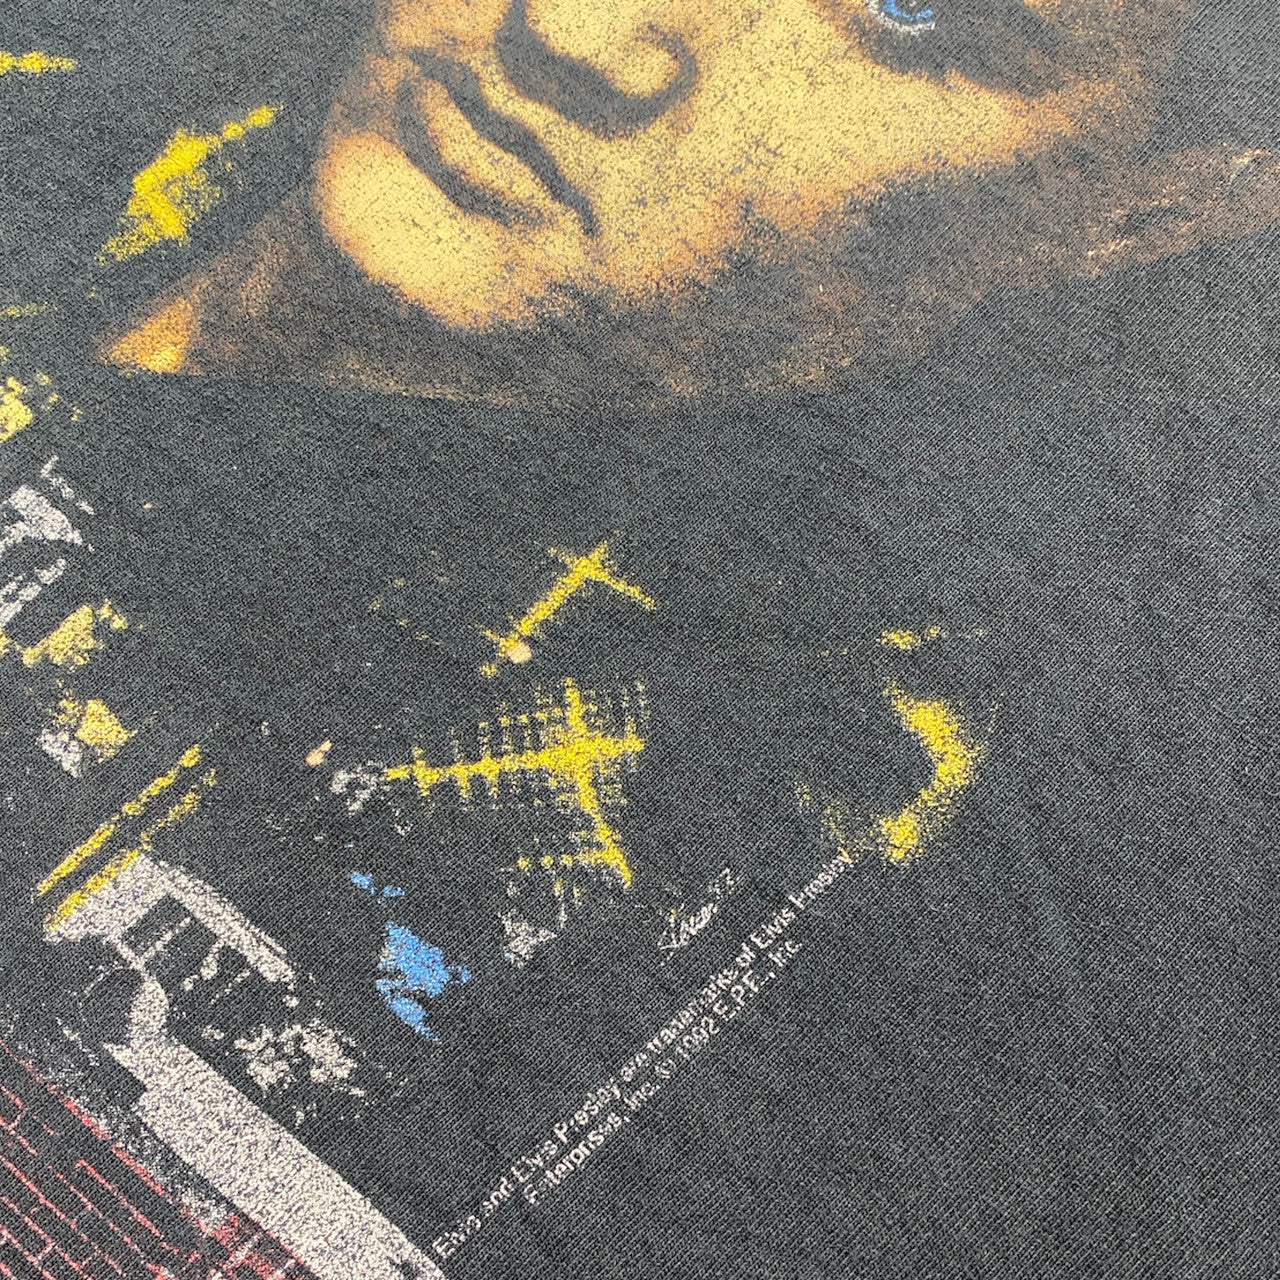 Vintage 1992 Elvis 'I've been to Graceland' Tshirt